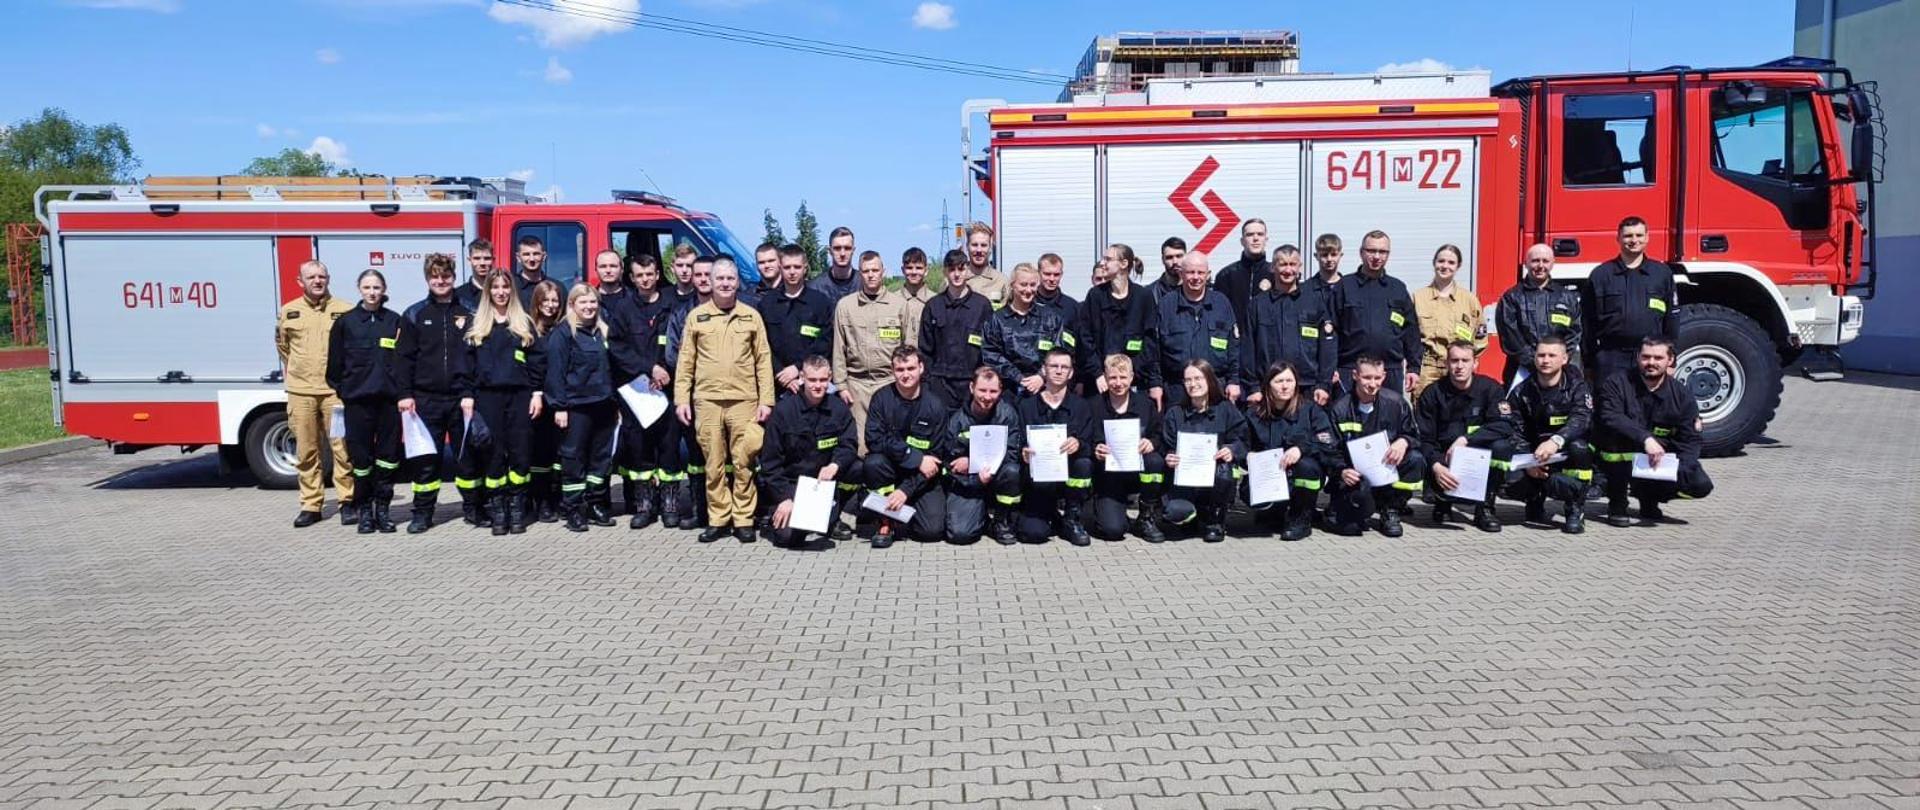 Egzamin końcowy szkolenia podstawowego strażaków ratowników Ochotniczych Straży Pożarnych - pamiątkowe zdjęcie na tle pojazdów pożarniczych.